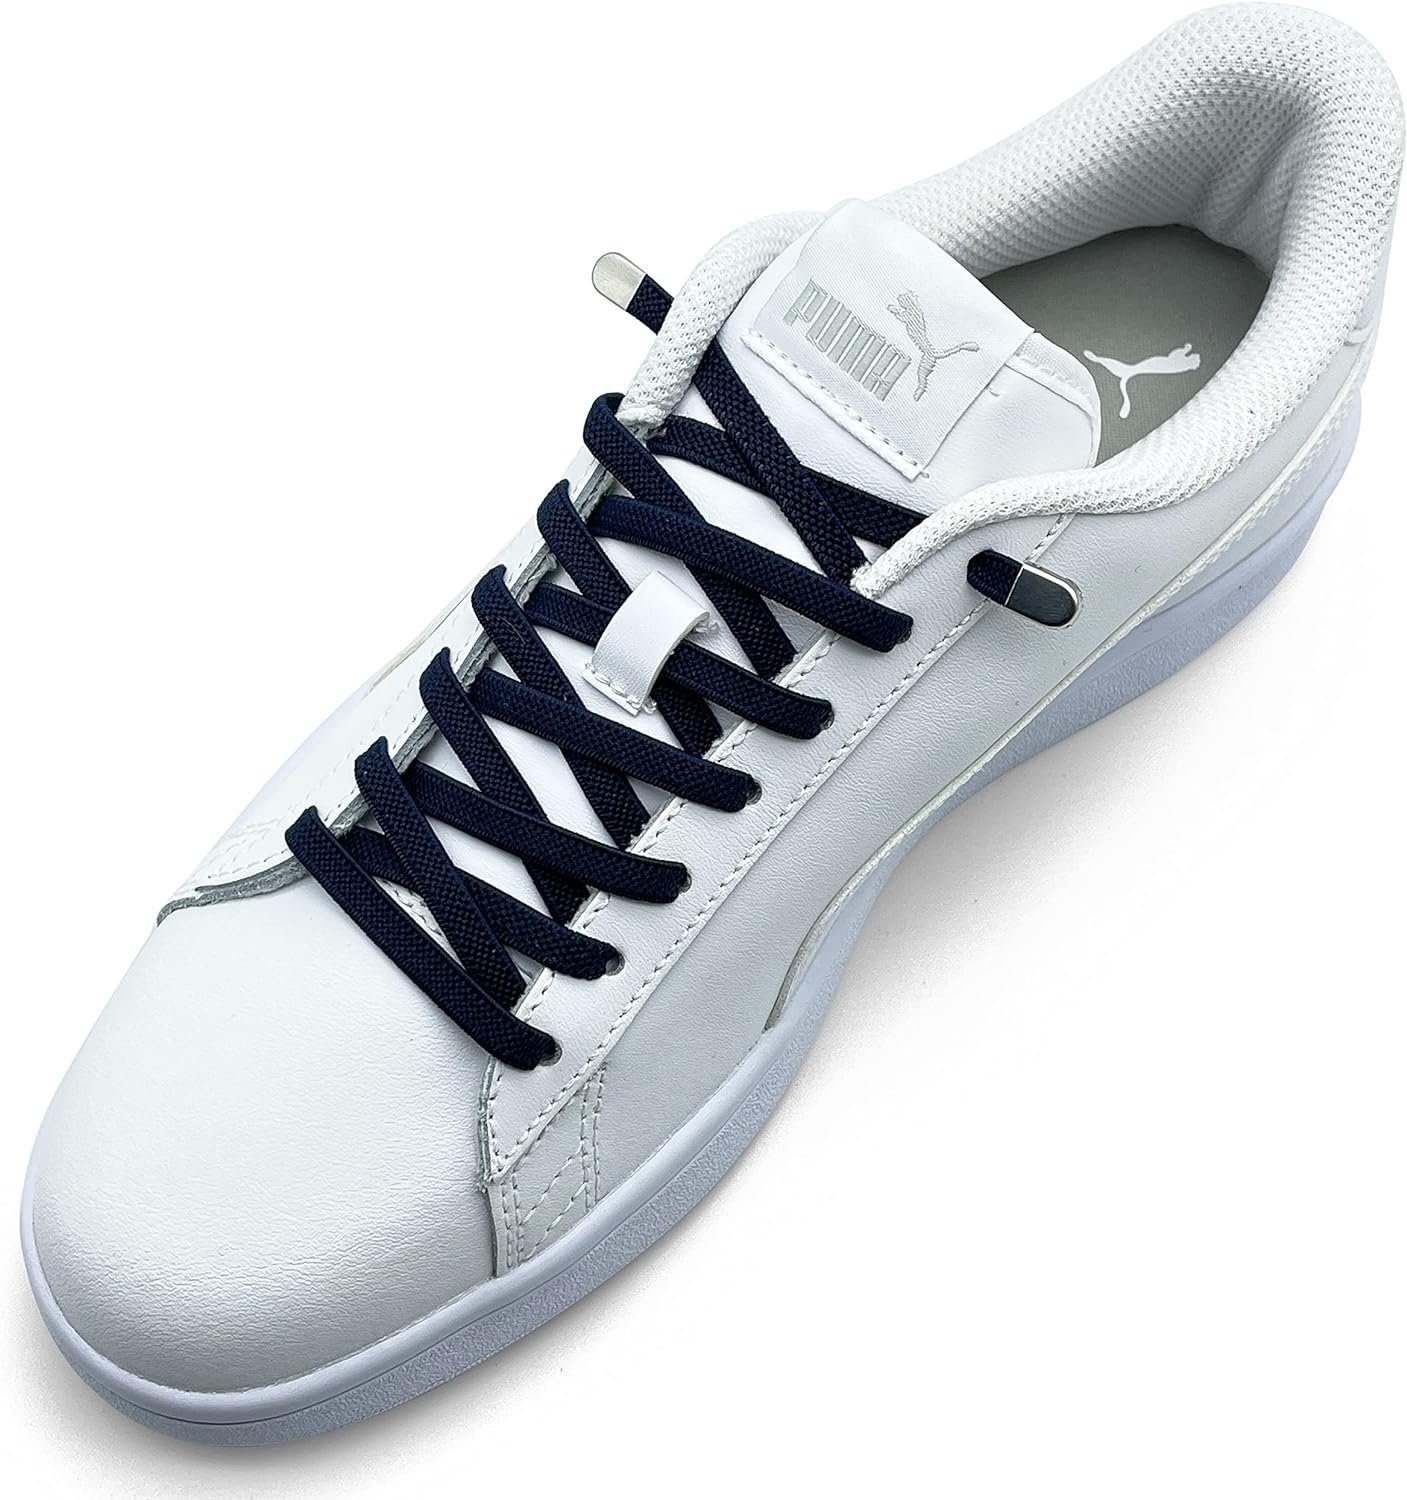 ELANOX Schnürsenkel 4 Stück für 2 Paar Schuhe elastische Schnürsenkel mit Clips, inkl. Enden (Clips) - 8 St. in silber dunkelblau